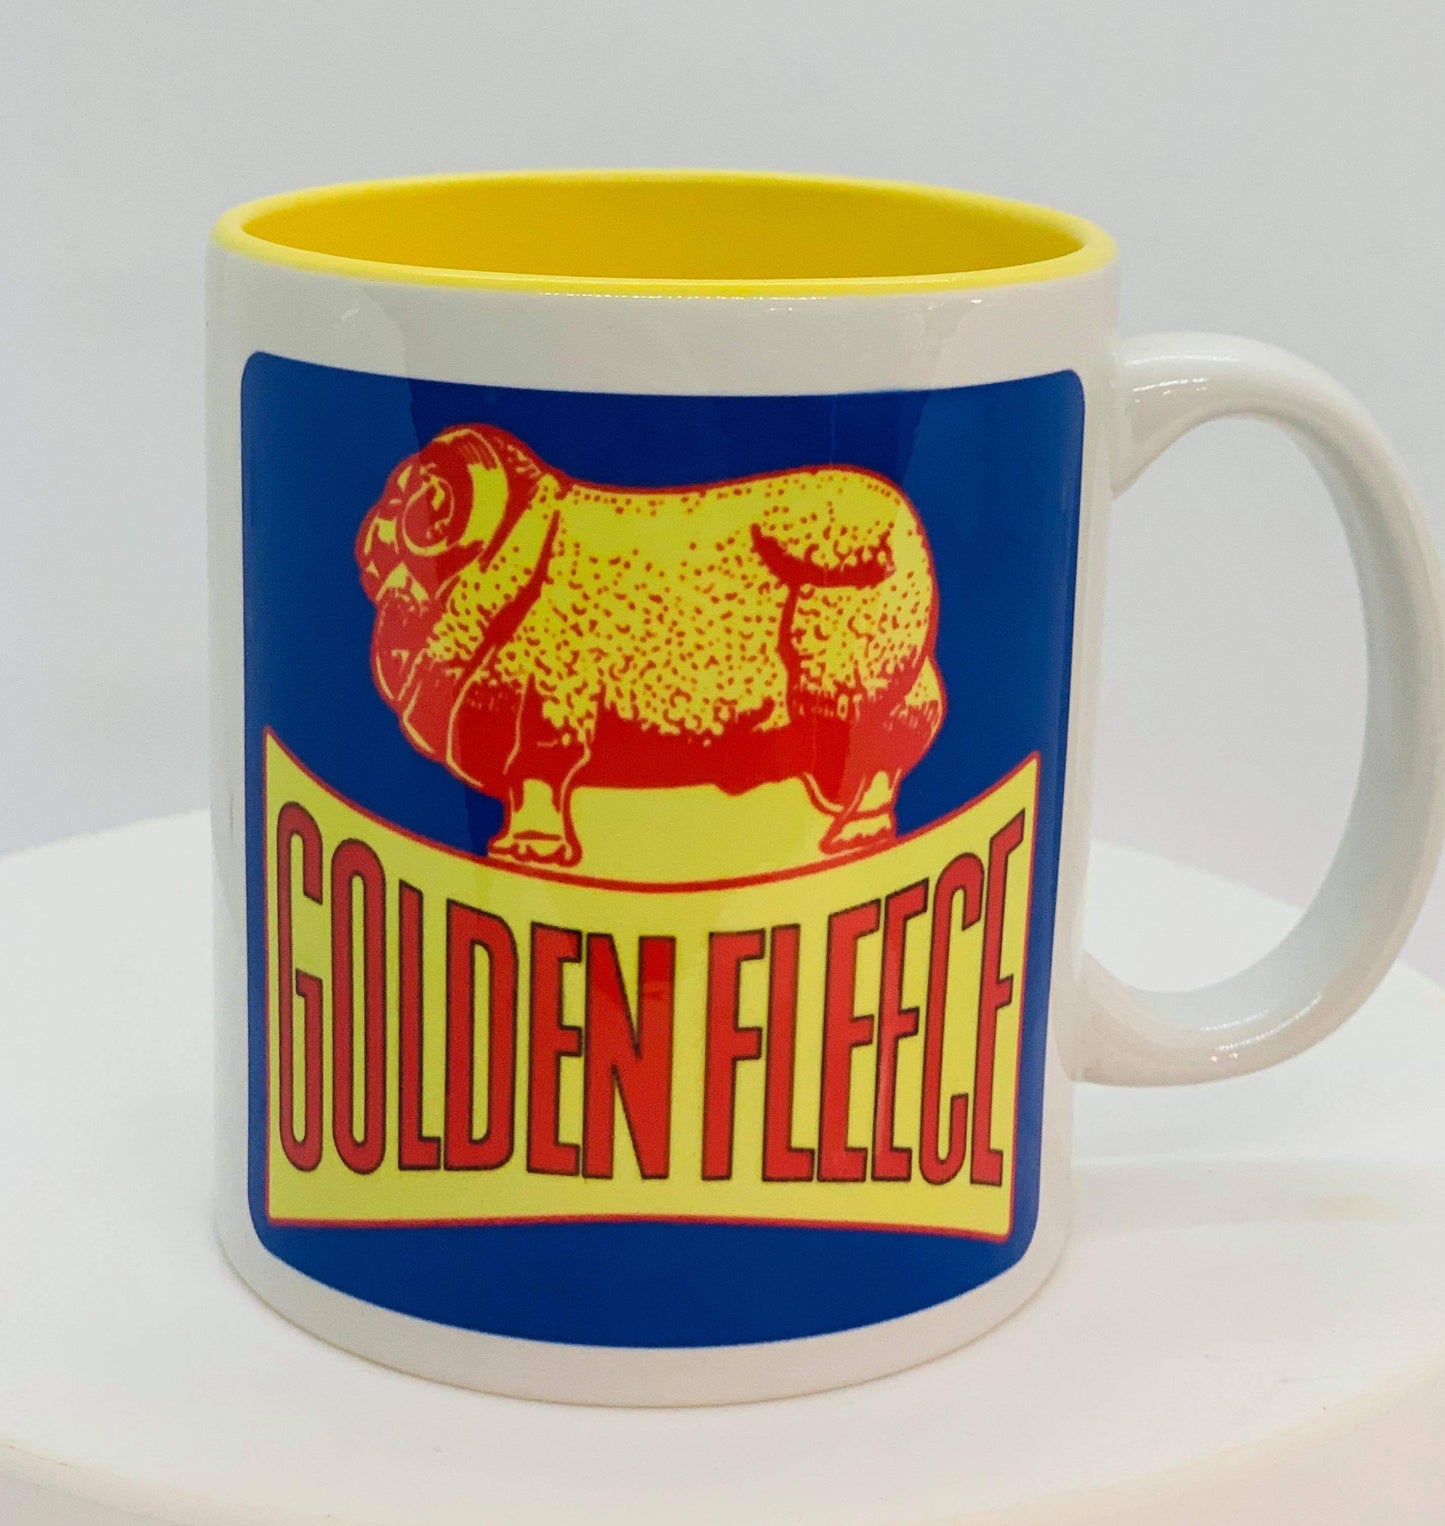 Golden Fleece Motor Oil Mug